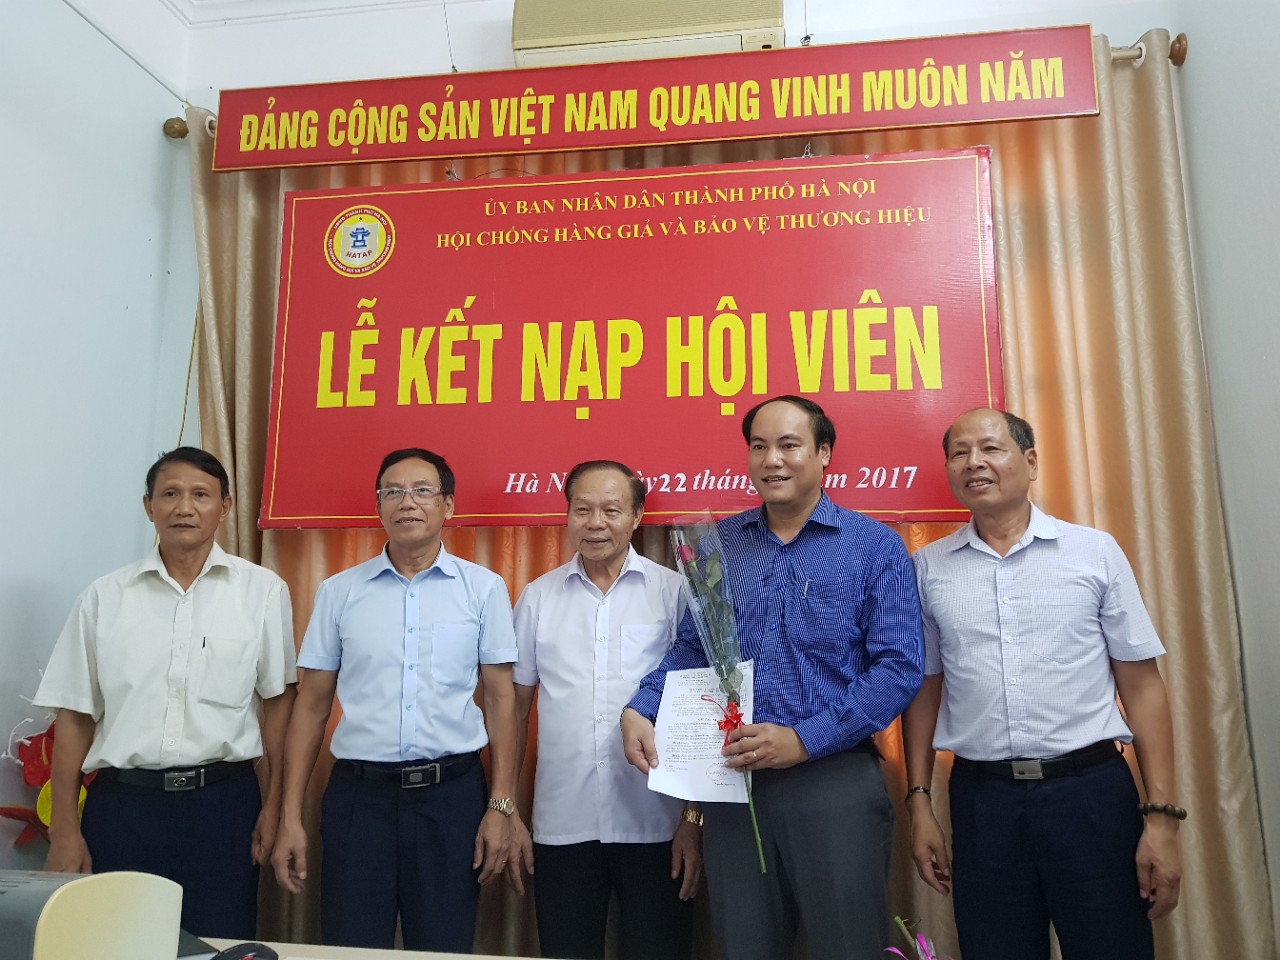 Hội Chống hàng giả và bảo vệ thương hiệu TP Hà Nội tổ chức Lễ kết nạp hội viên mới